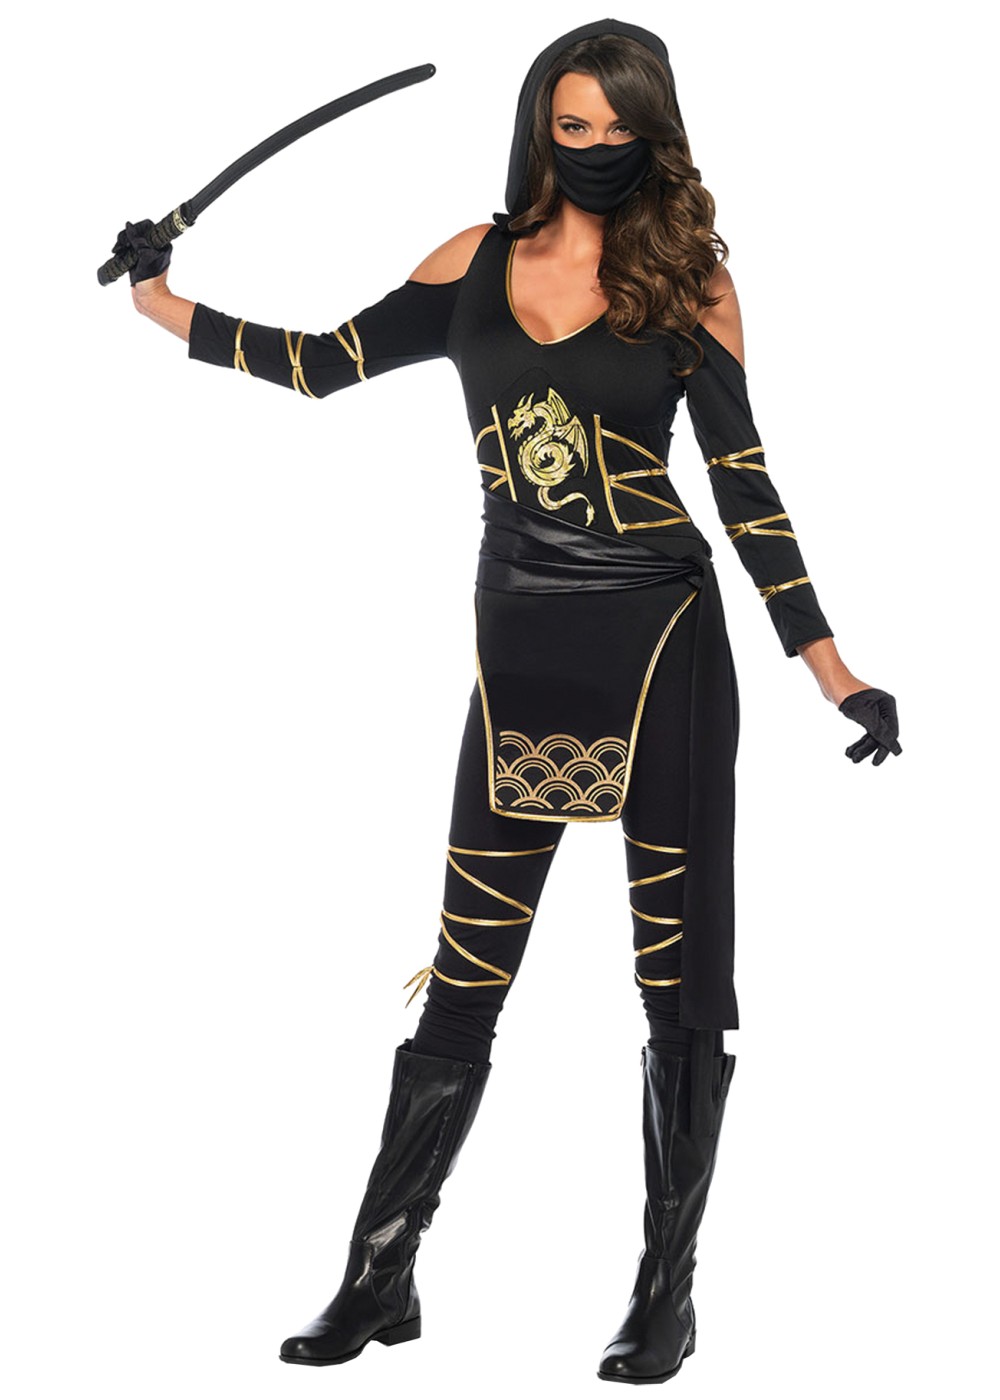 Black Stealth Ninja Woman Costume